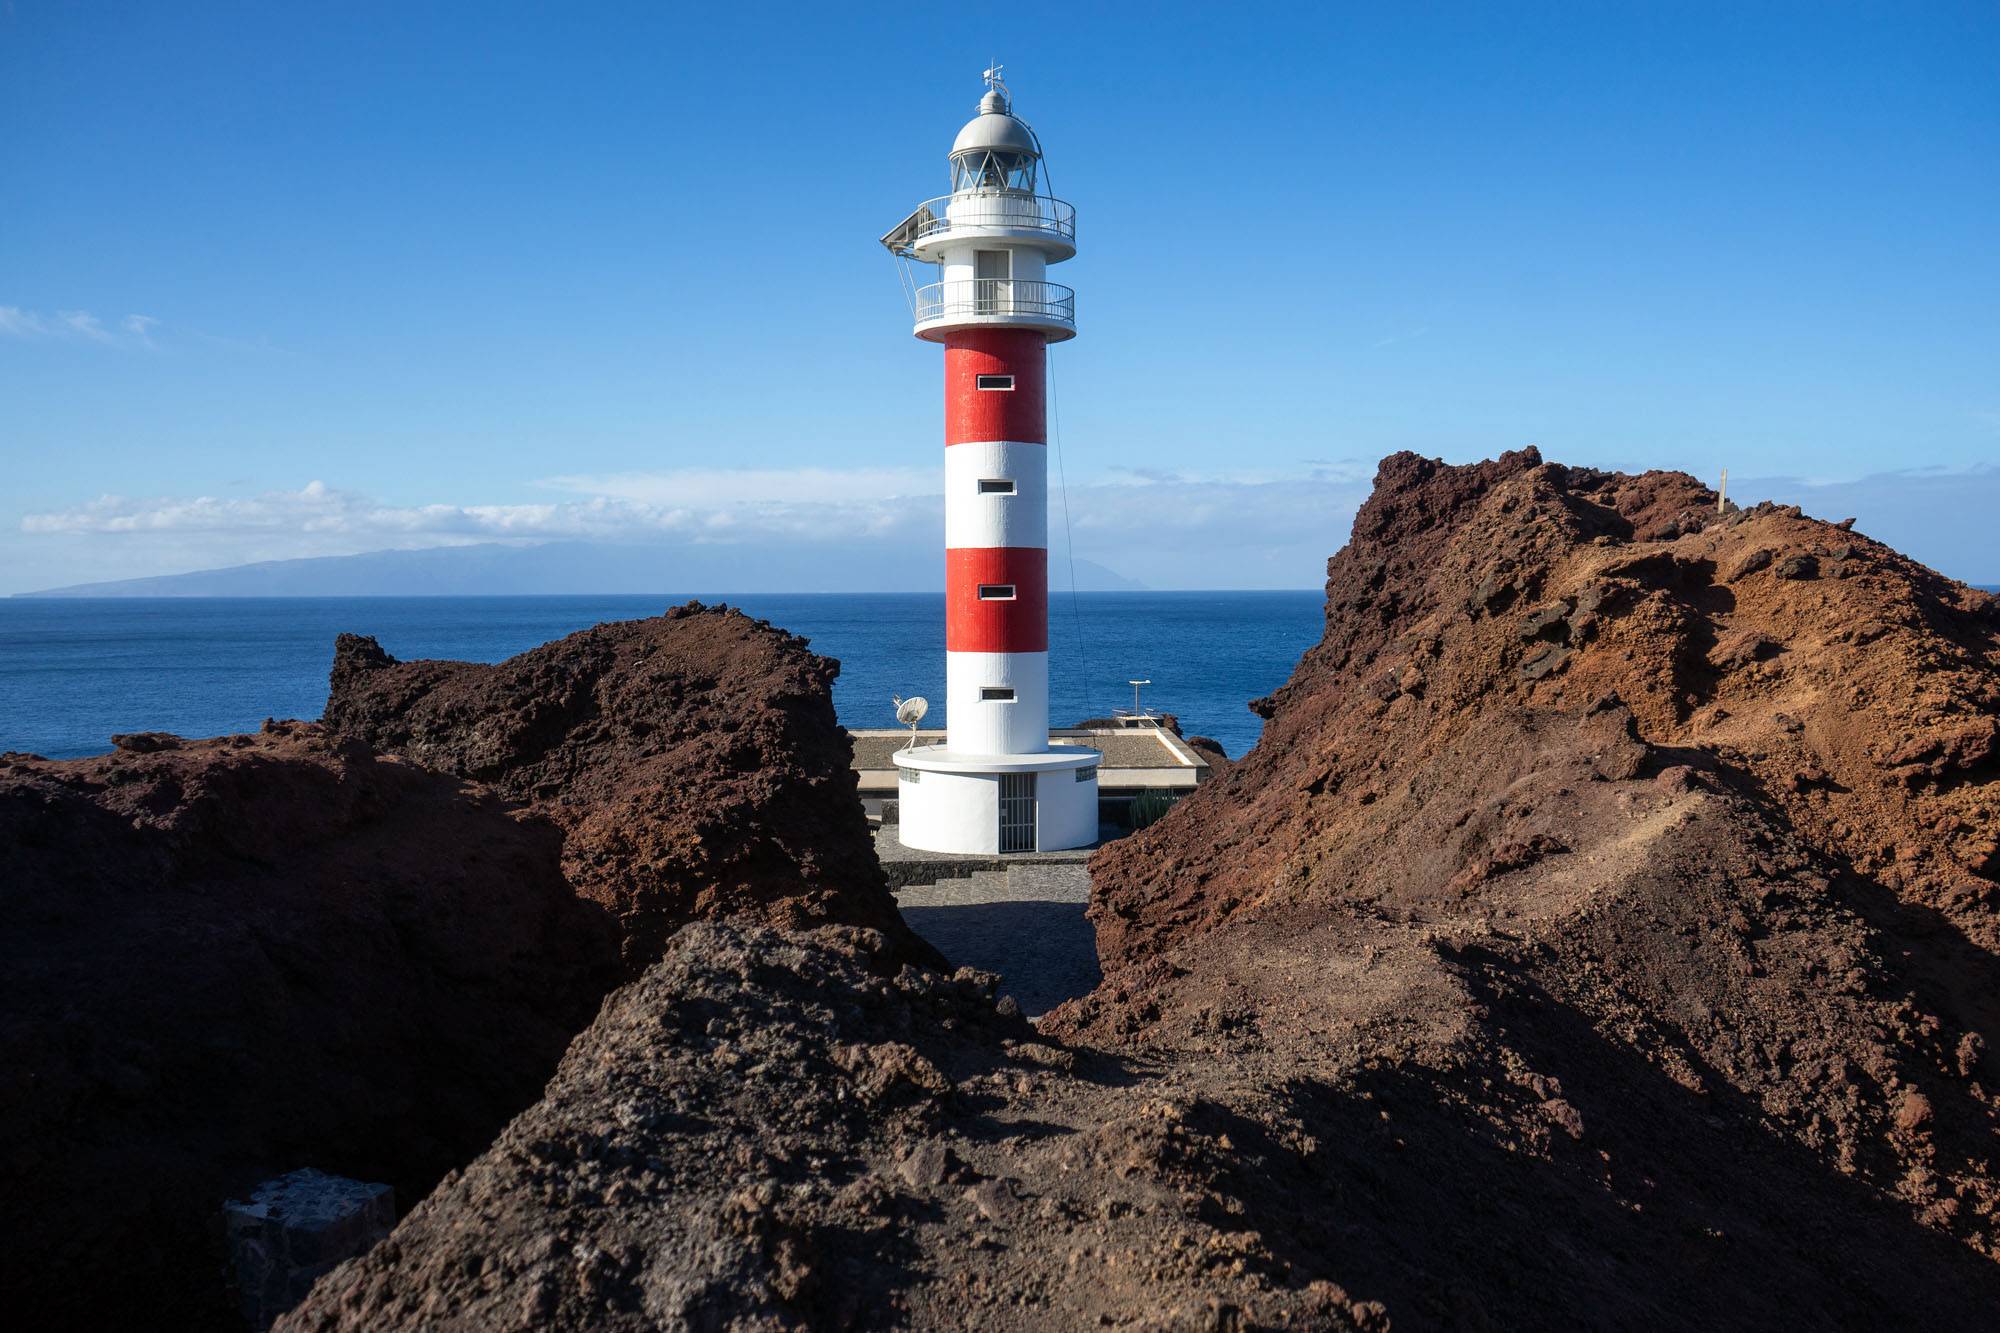 The lighthouse of Punto de Teno